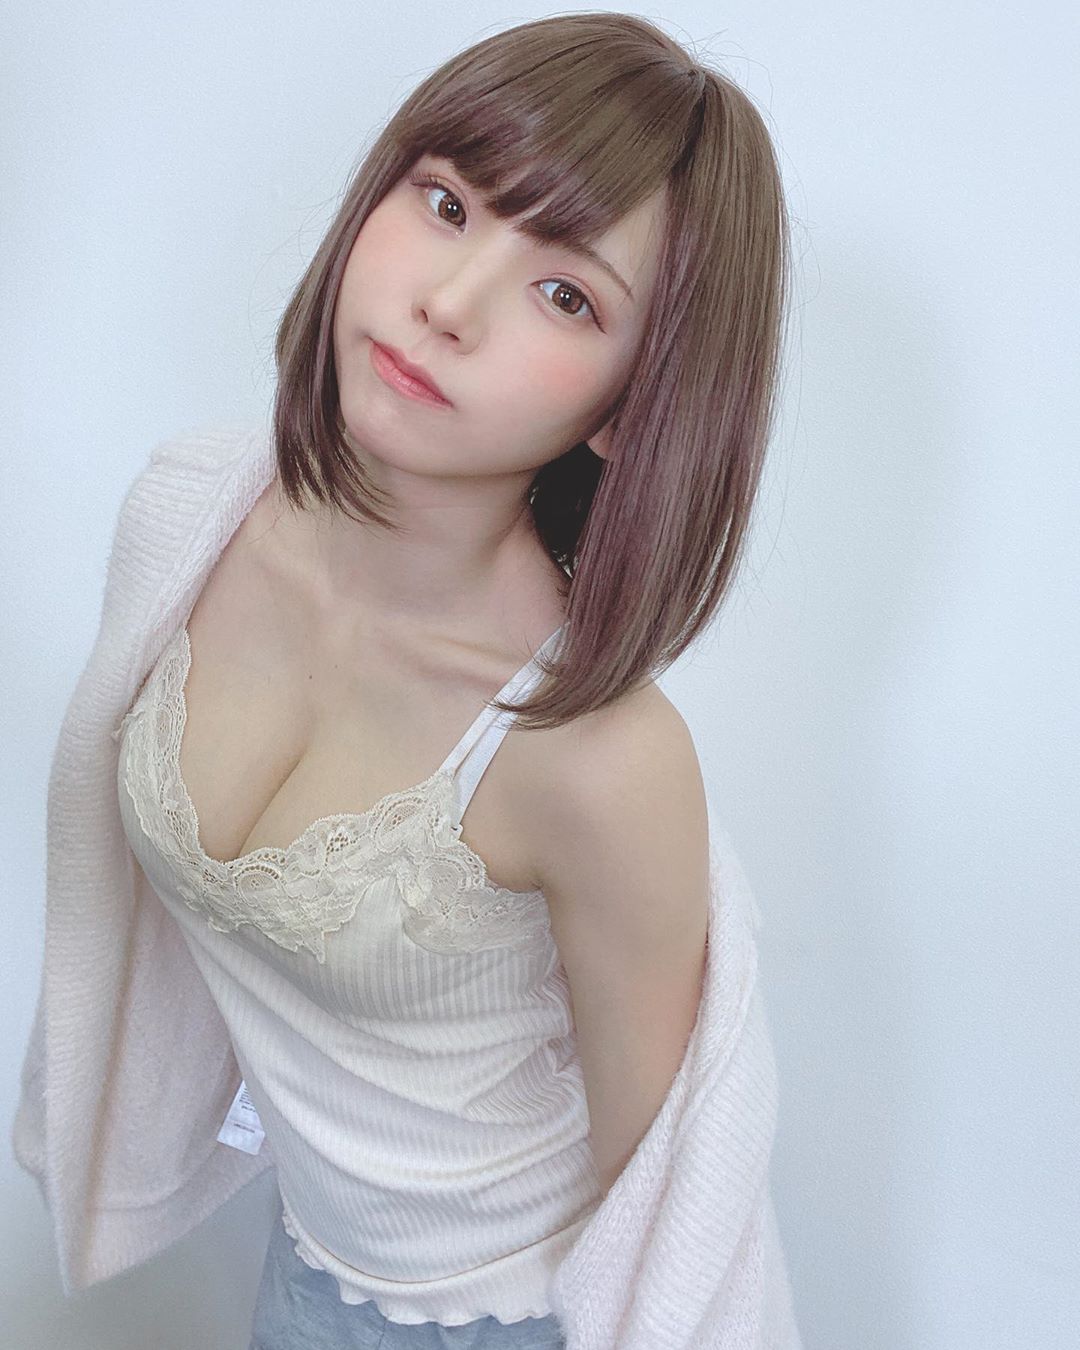 日本第一美女 COSER！最新「Enako」性感写真画面曝光，邪恶视角谁受得了&#8230;